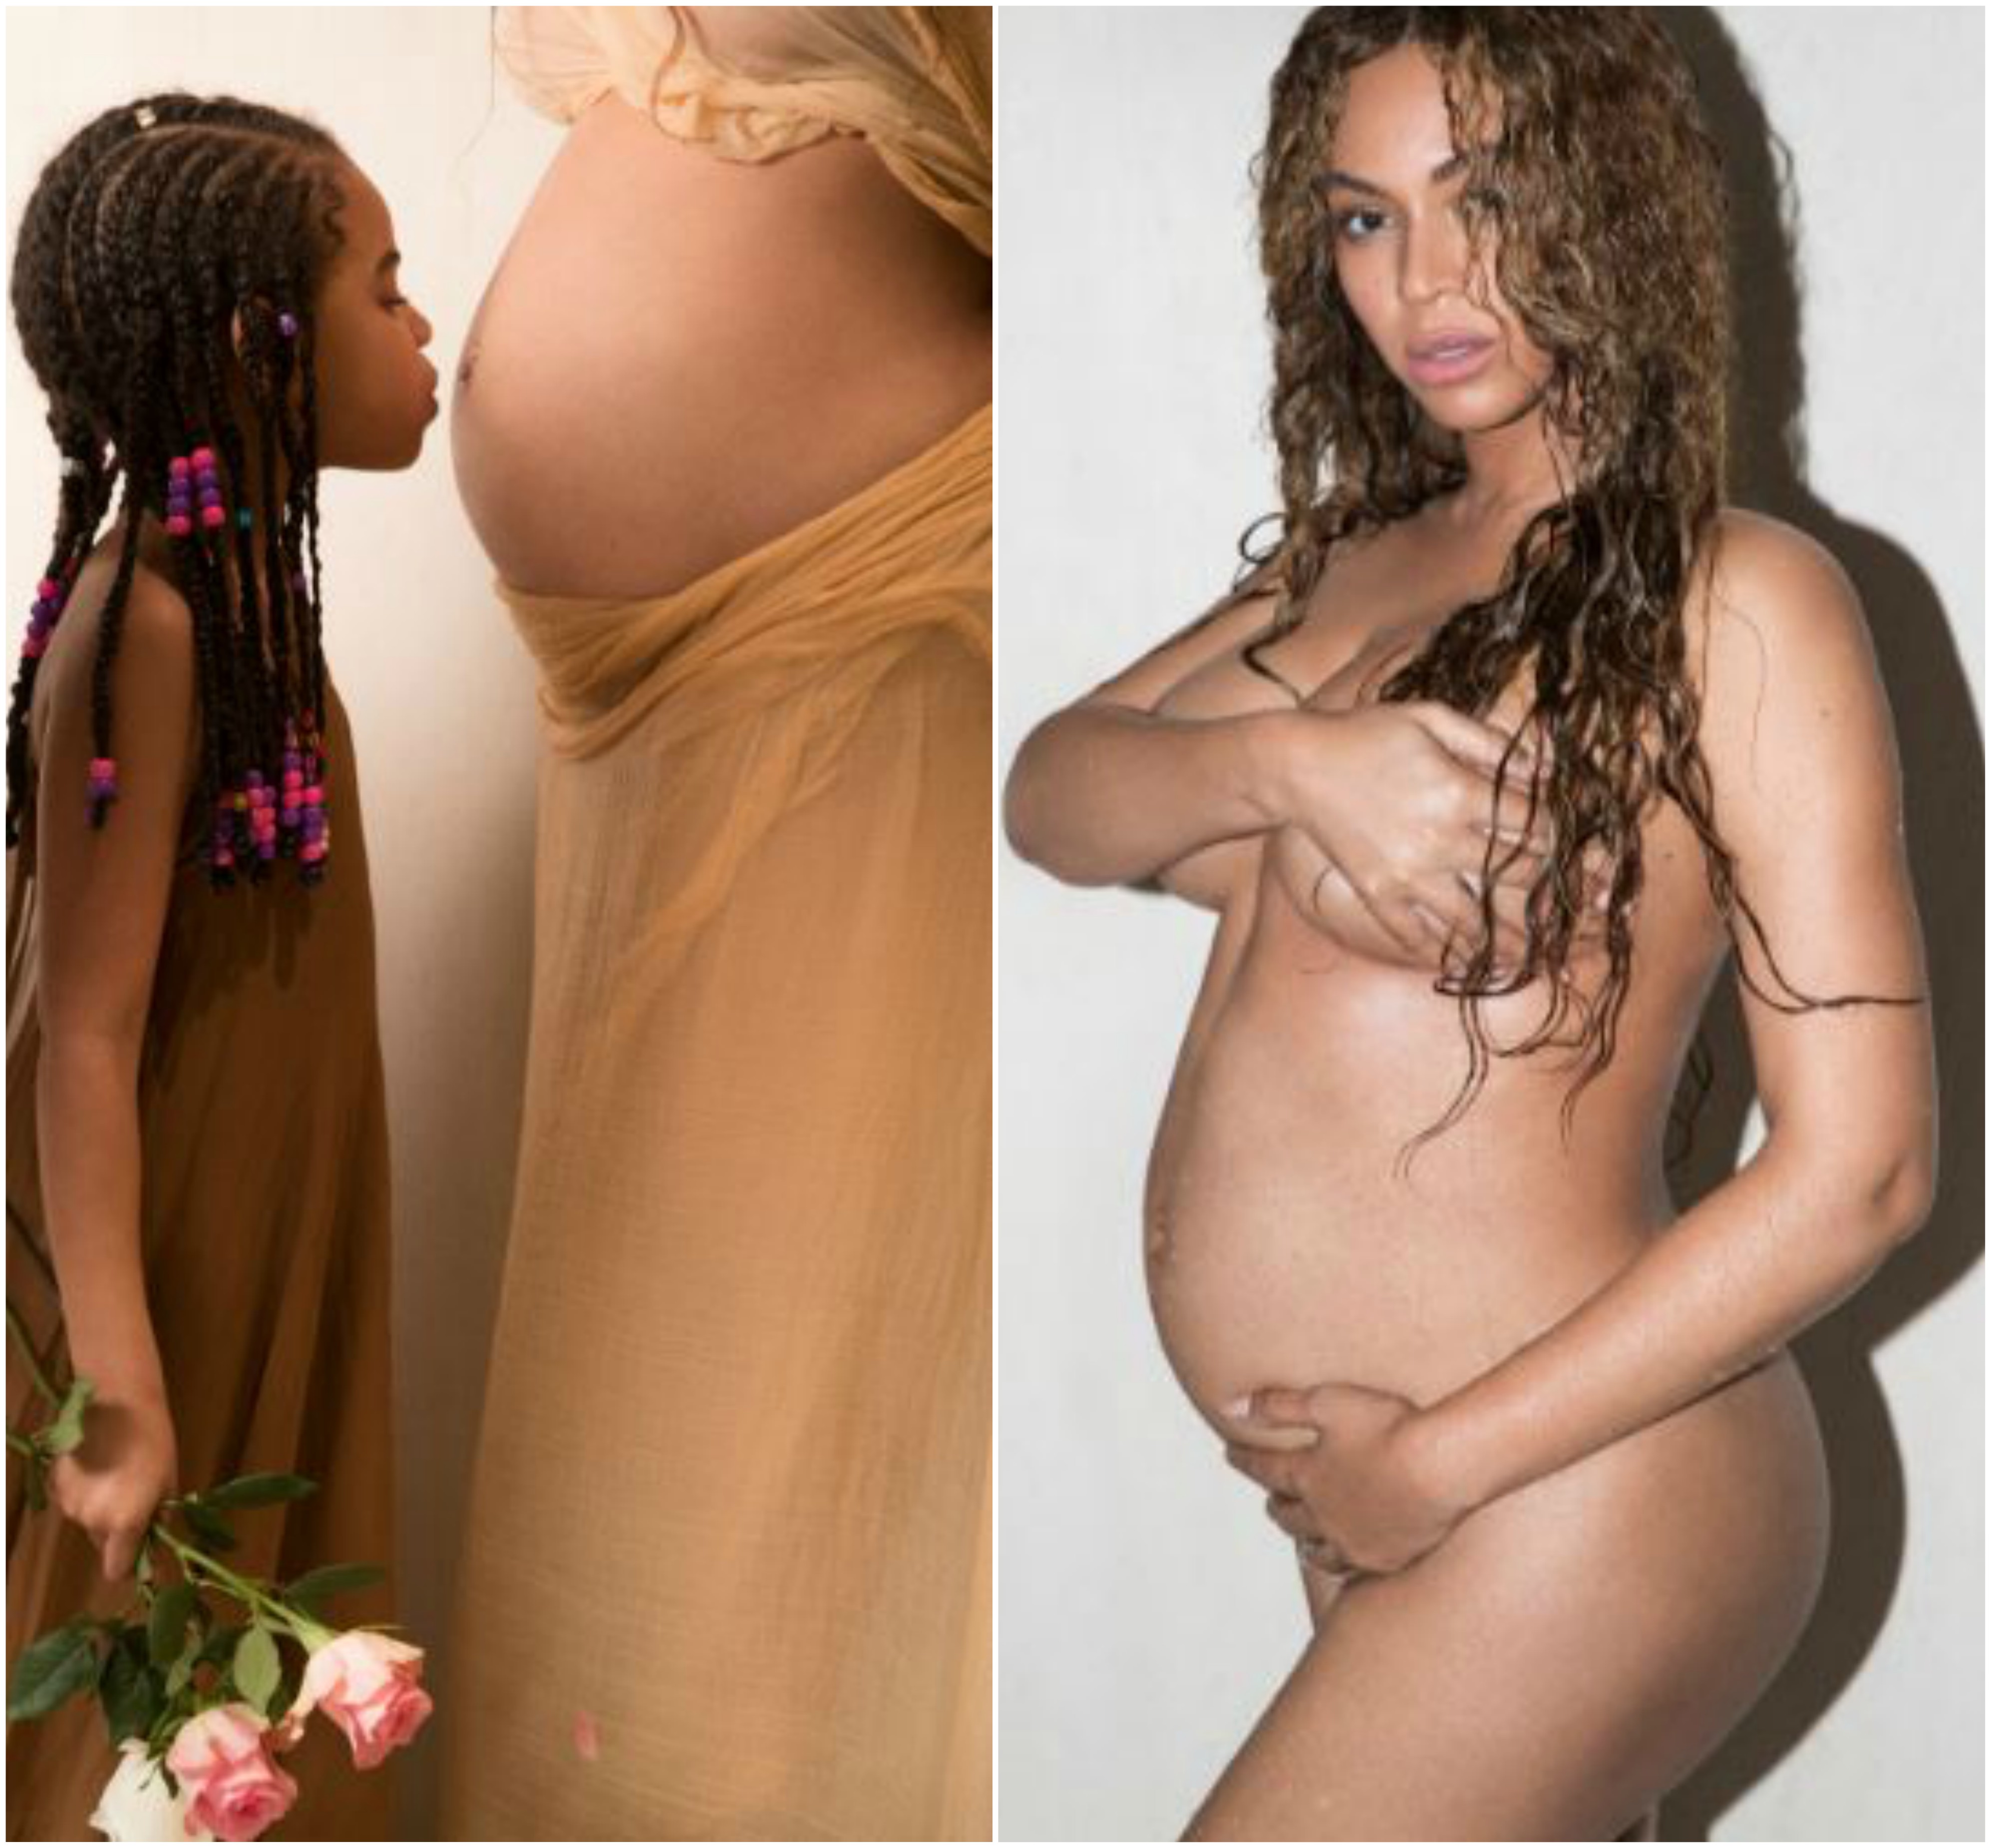 PHOTOS - Beyonce nue et enceinte dans une séance photo de grossesse.